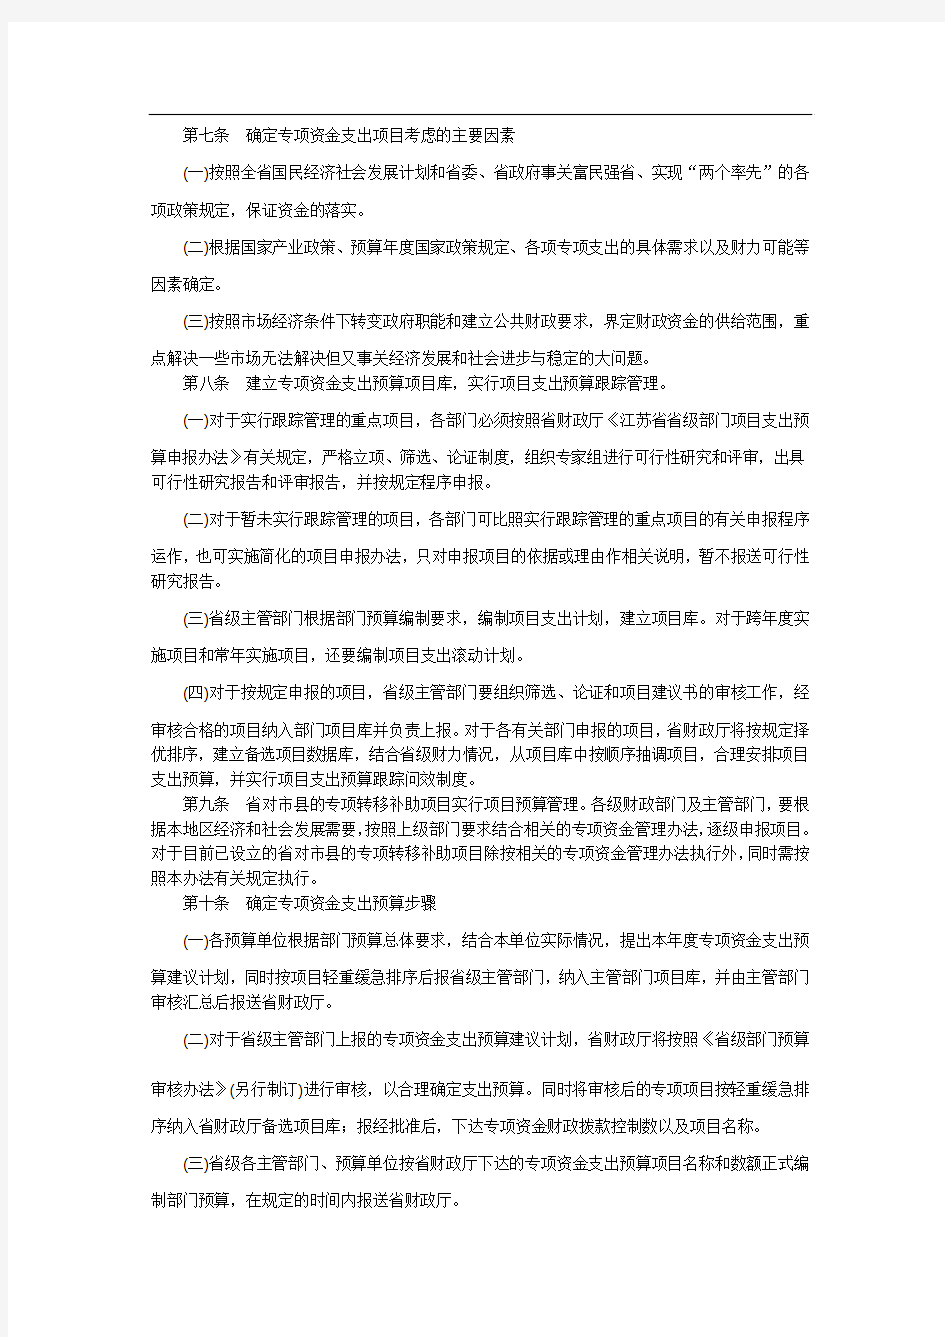 江苏省省级部门财政专项资金预算管理办法